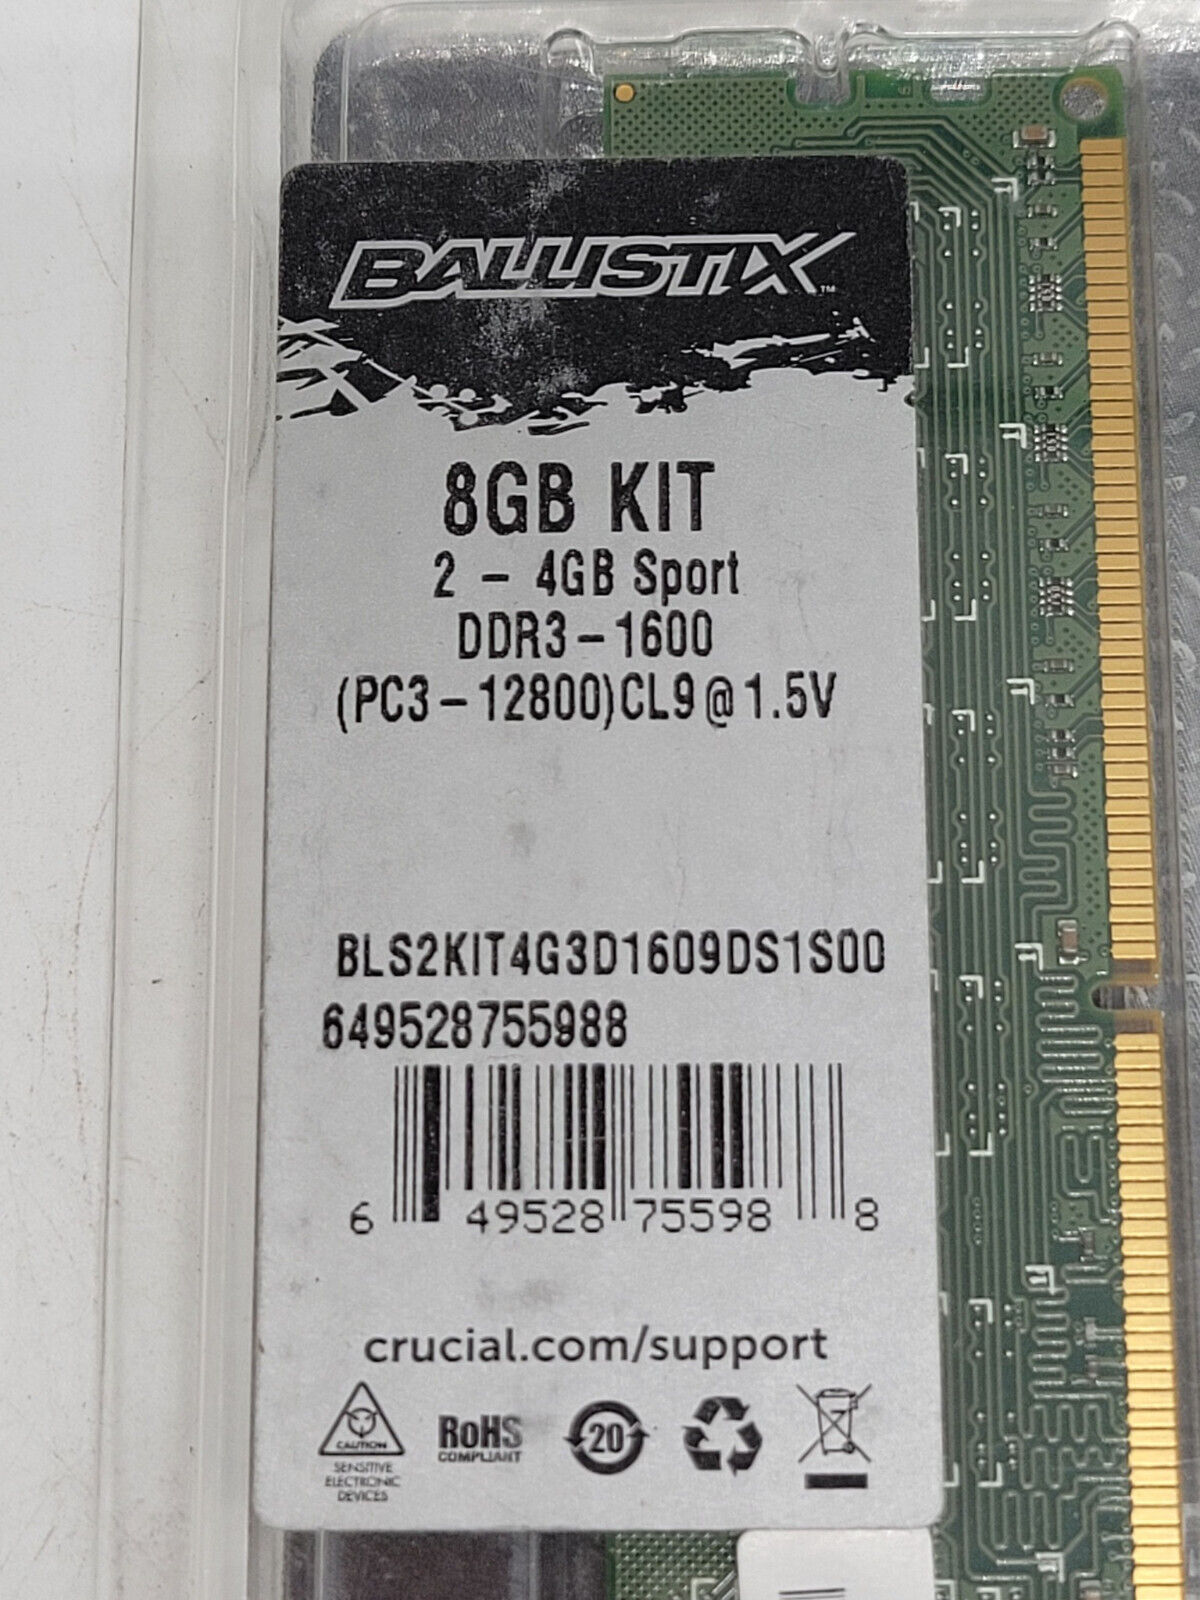 Crucial Ballistix Sport 8GB (2 - 4 GB Sport) Kit DDR3 1600 PC3 12800 Ram Memory